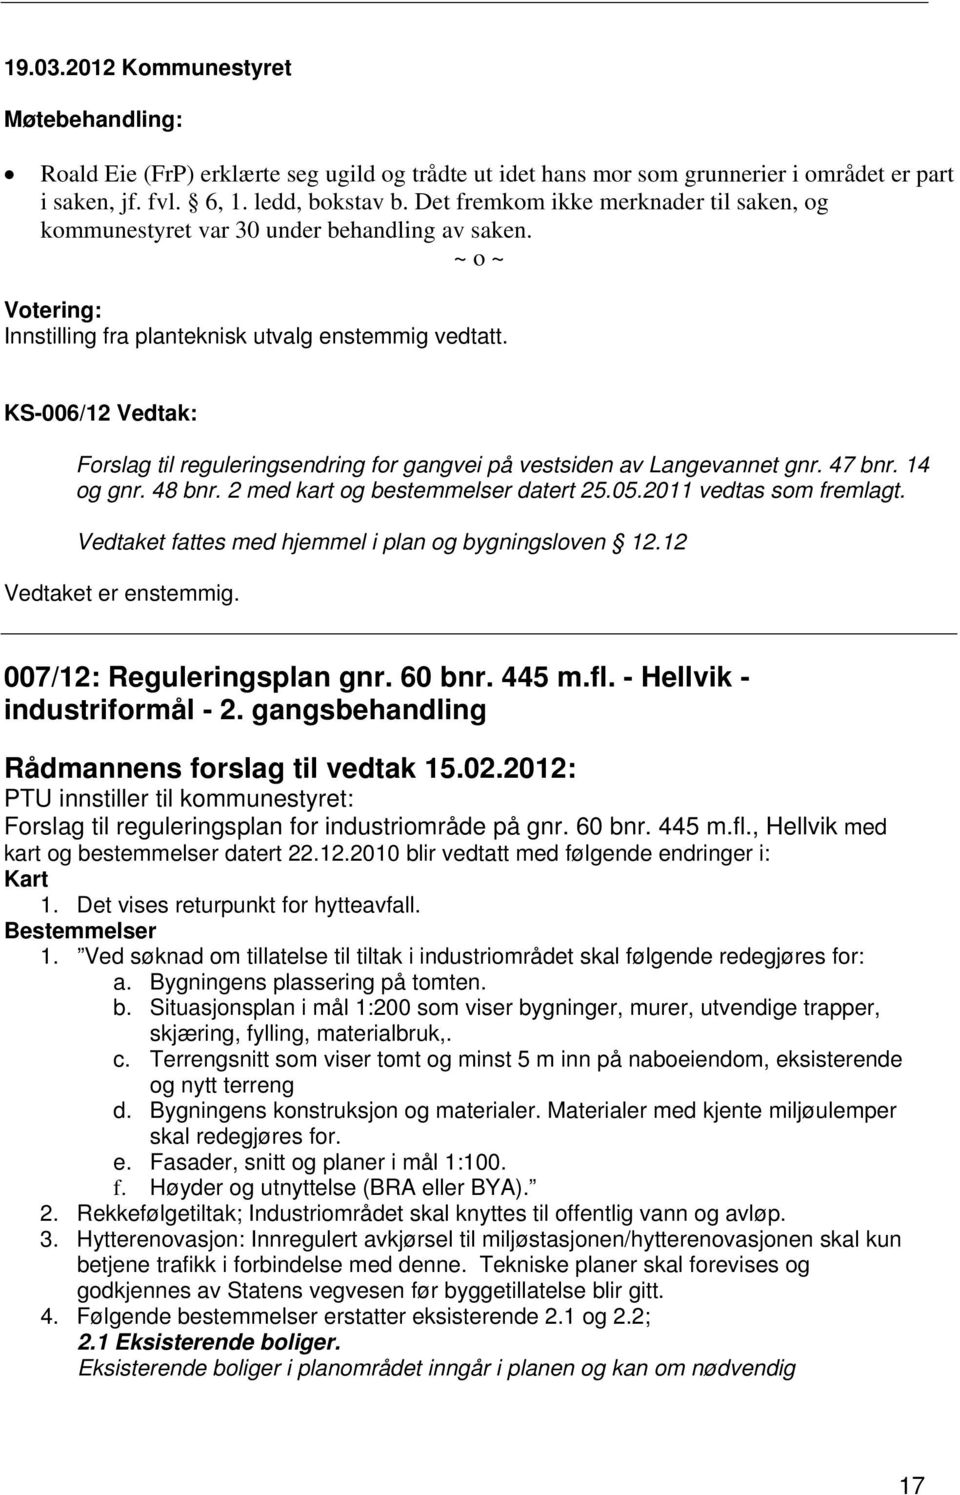 KS-006/12 Vedtak: Forslag til reguleringsendring for gangvei på vestsiden av Langevannet gnr. 47 bnr. 14 og gnr. 48 bnr. 2 med kart og bestemmelser datert 25.05.2011 vedtas som fremlagt.